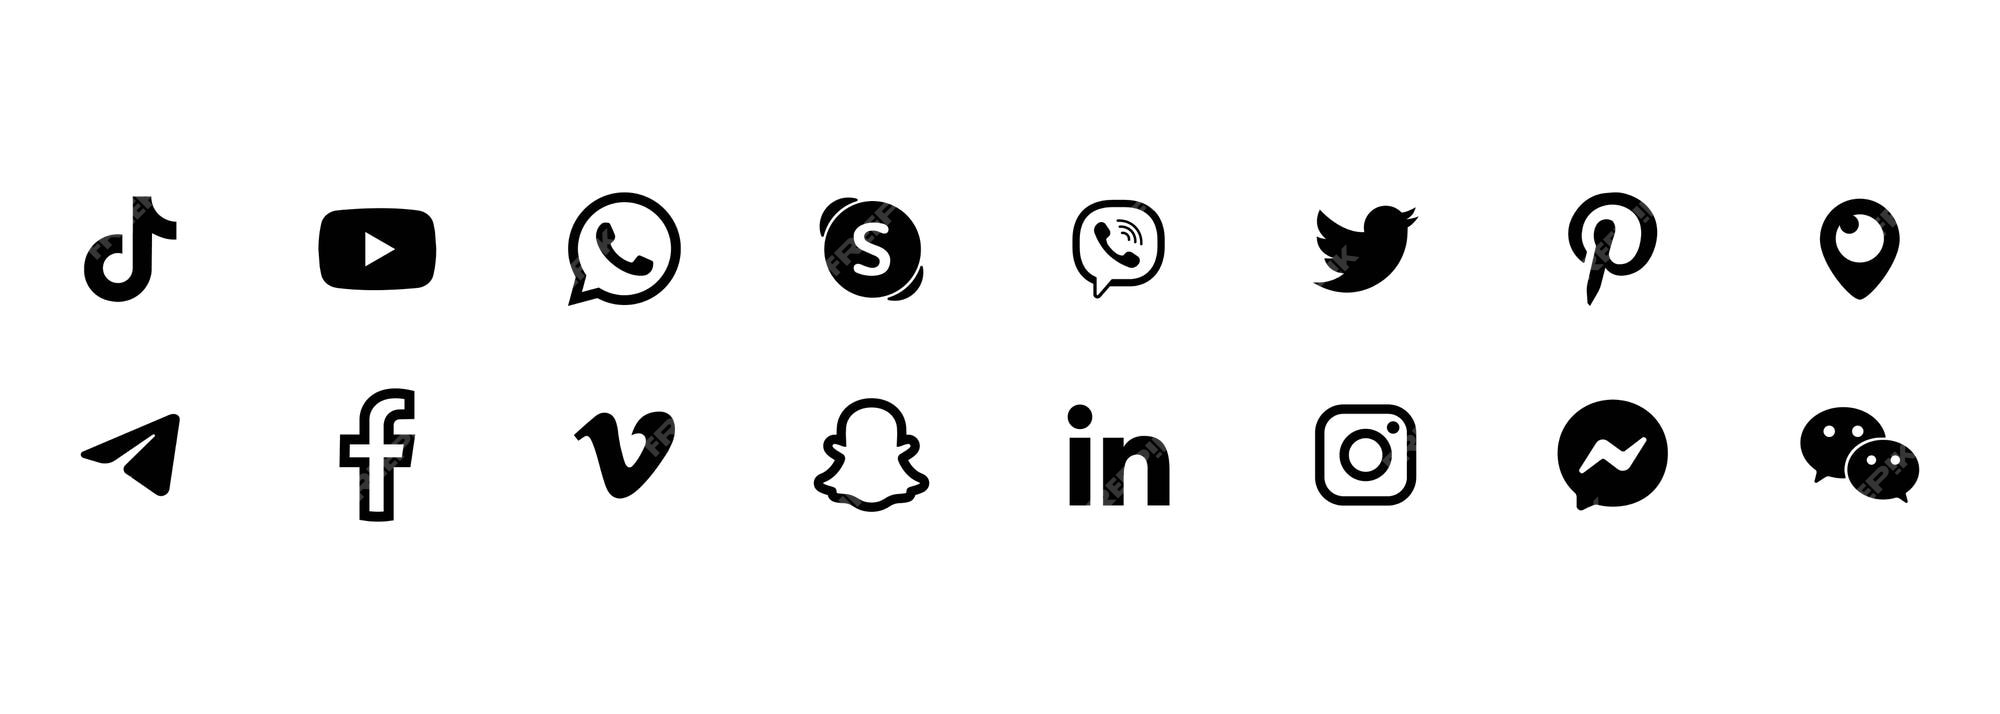 Popular social network logo. social network sign. flat social ...